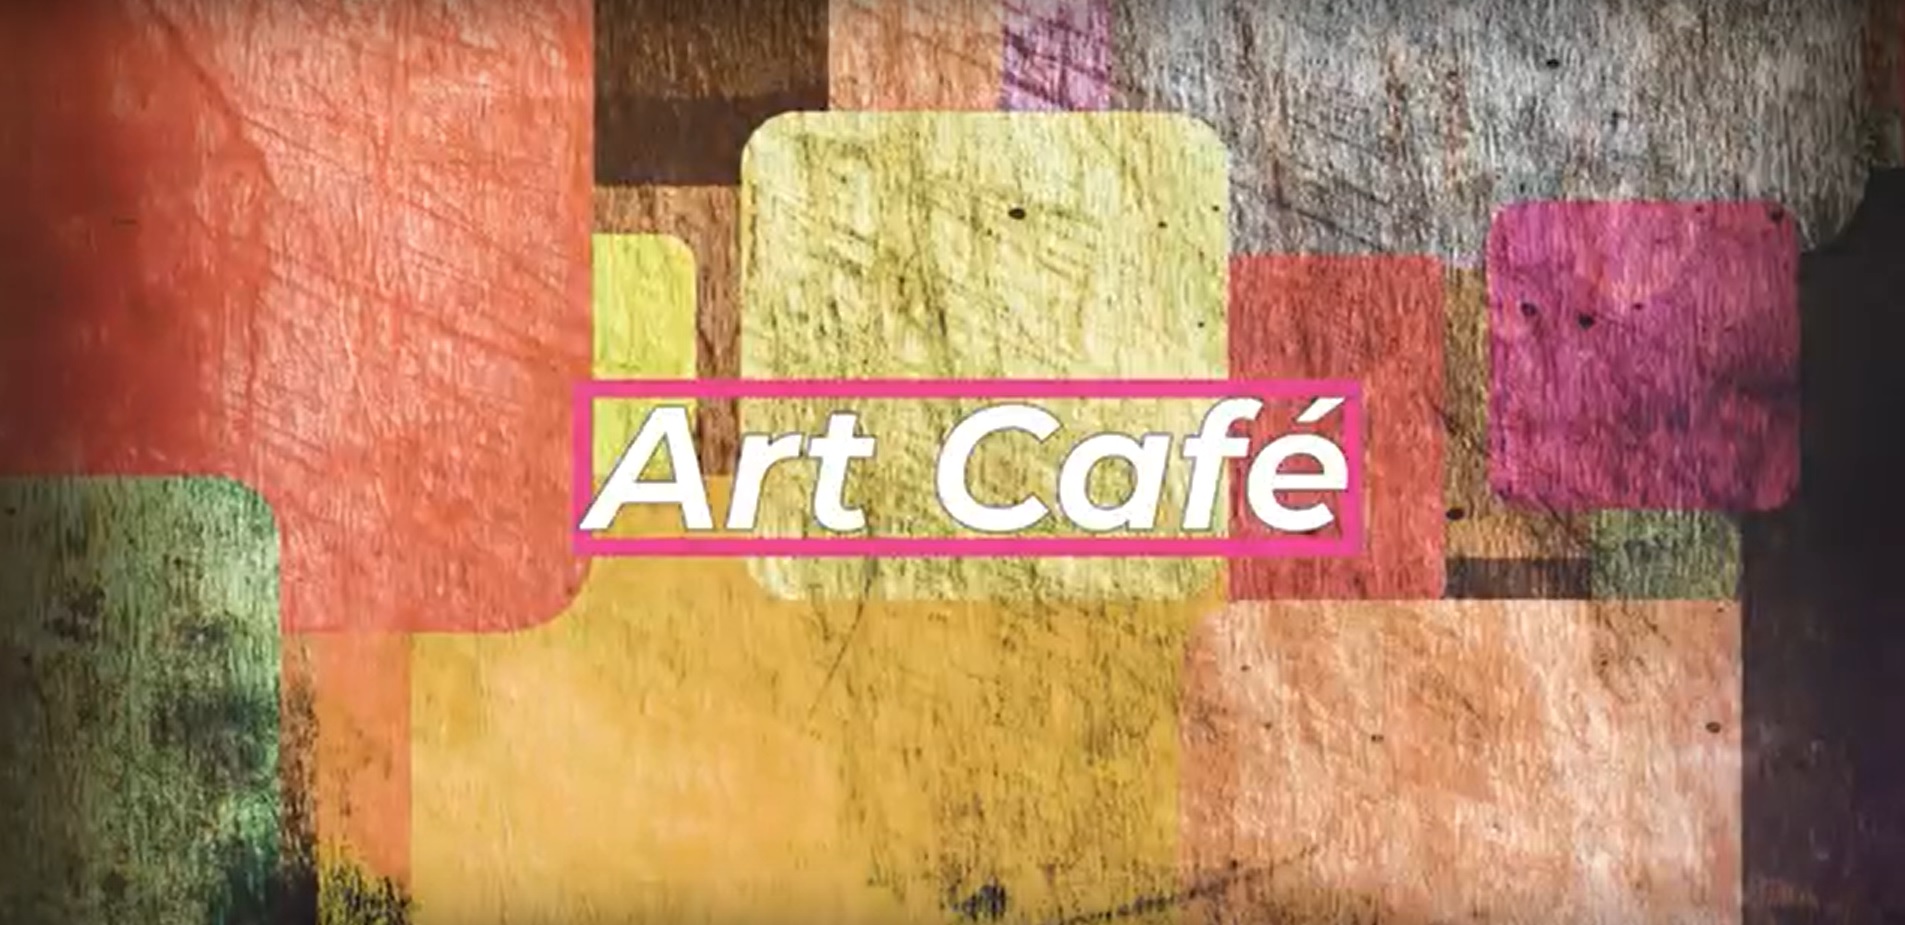 Art Cafe - kulisszatitkok a Királyi Napokról a Fehérvár Televízióban